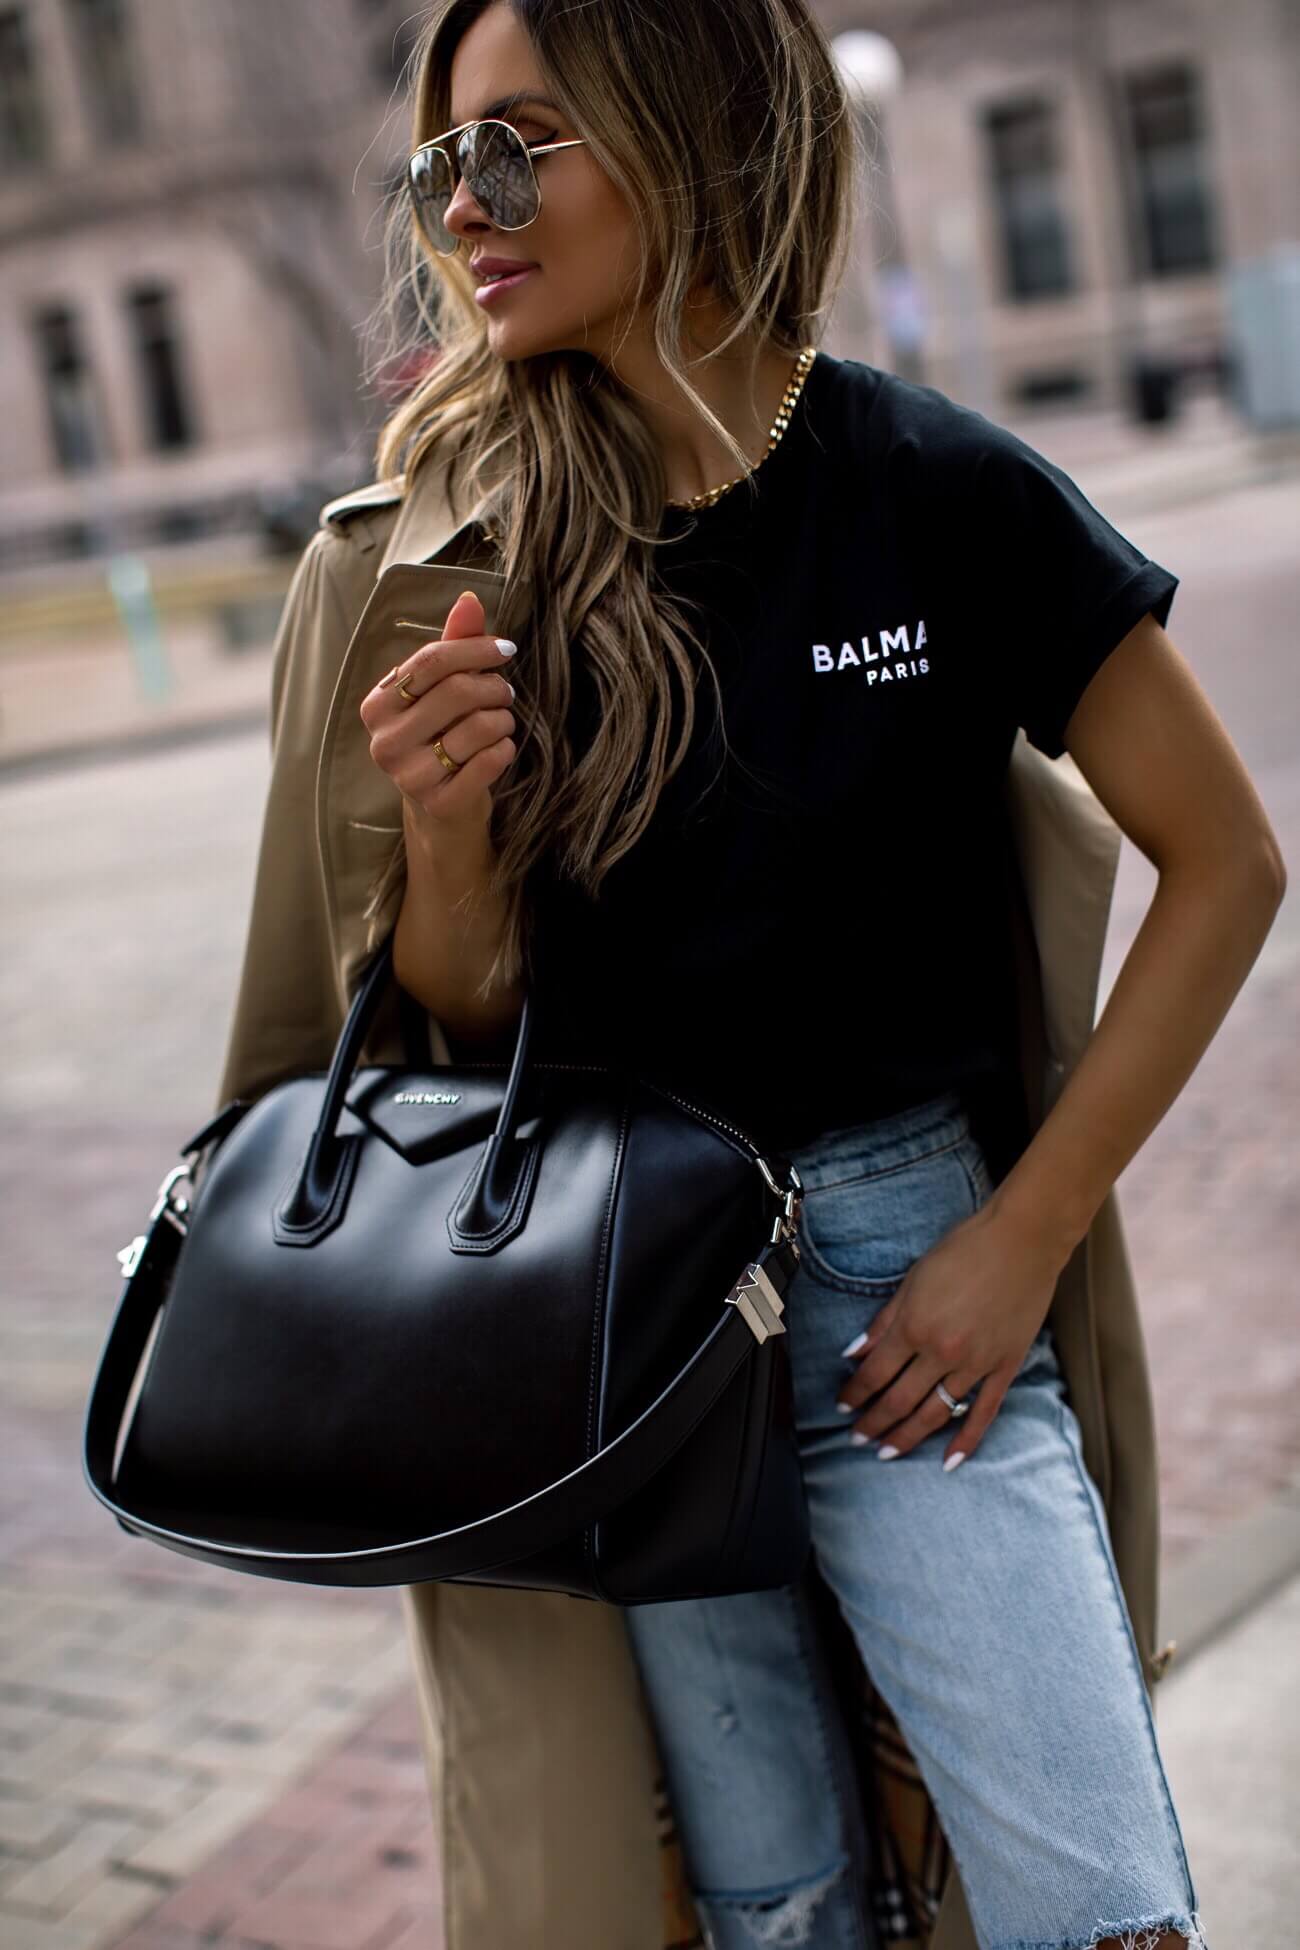 fashion blogger mia mia mine wearing a balmain tee for spring